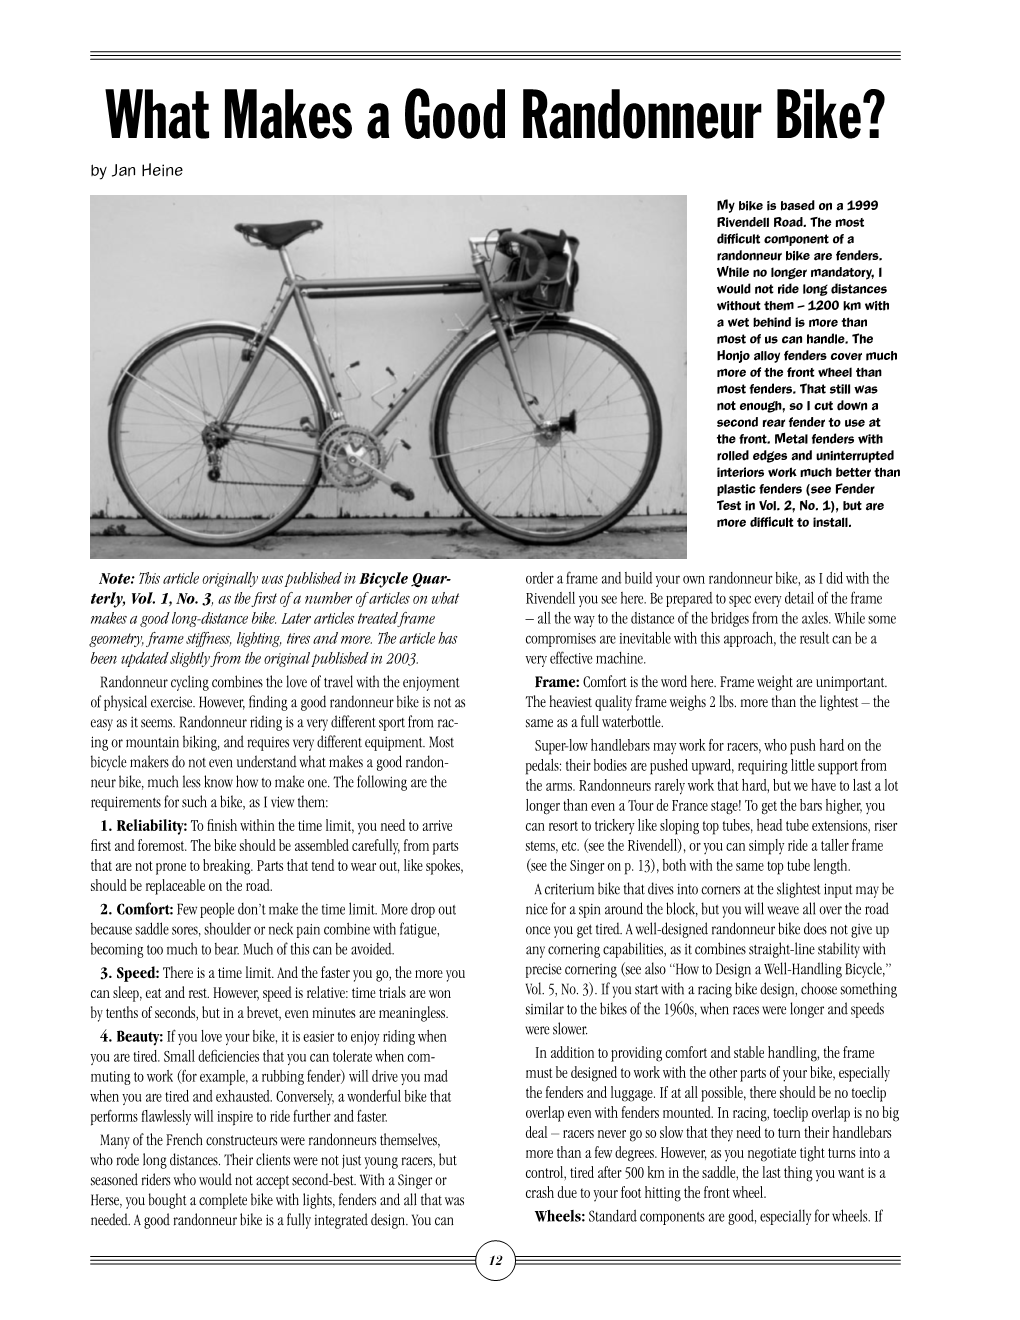 What Makes a Good Randonneur Bike? by Jan Heine